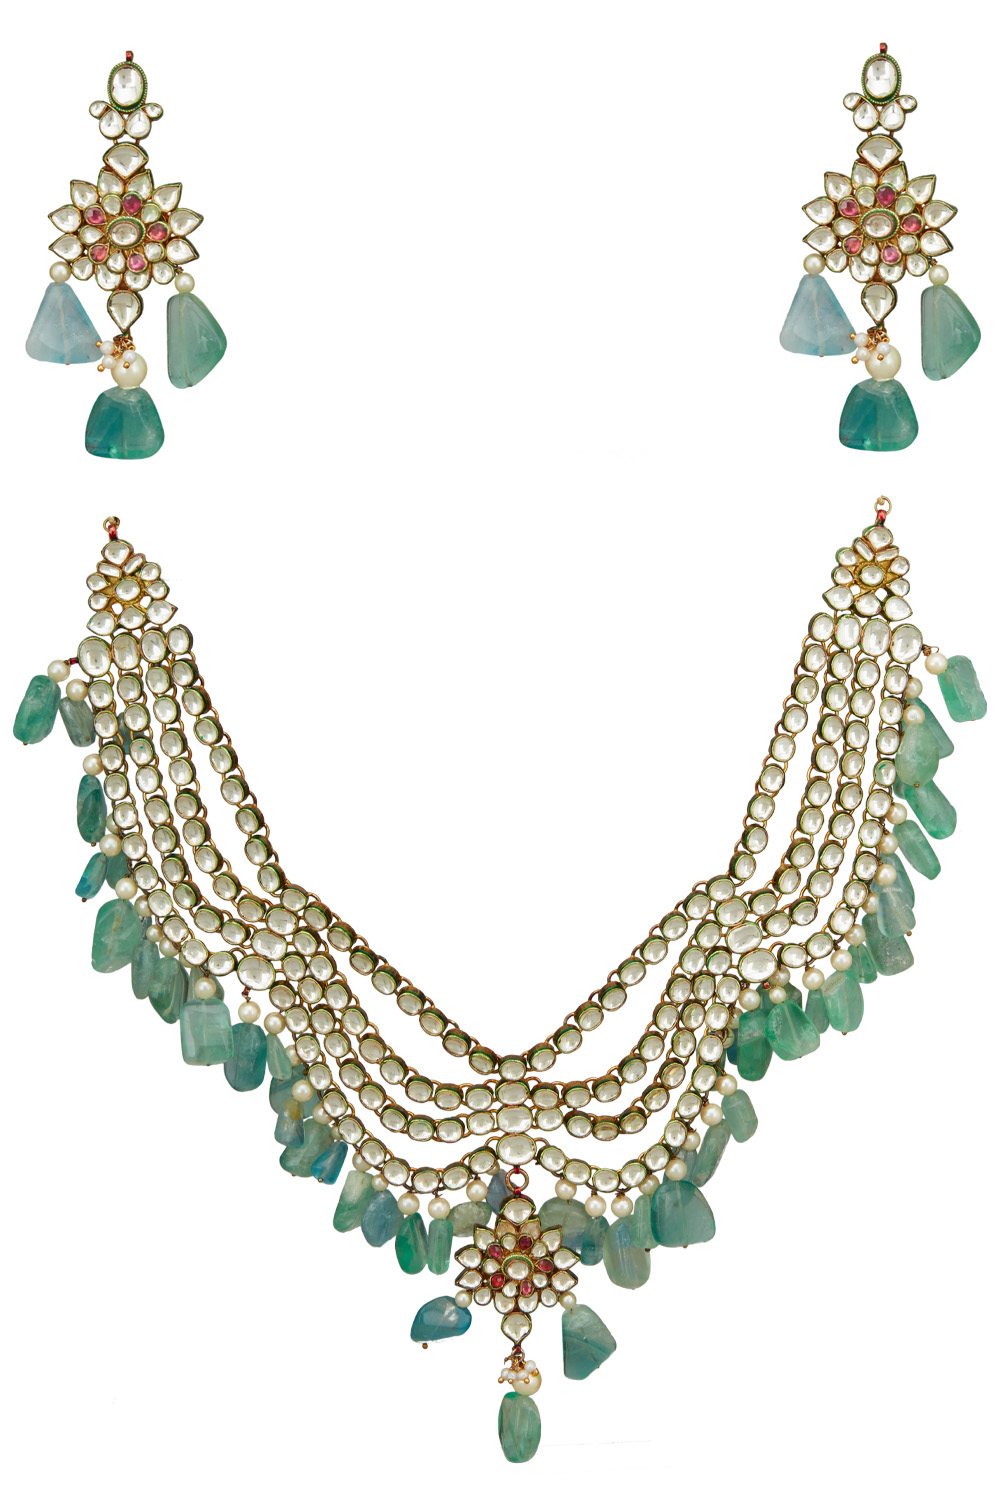 Jewelry by Janhavi